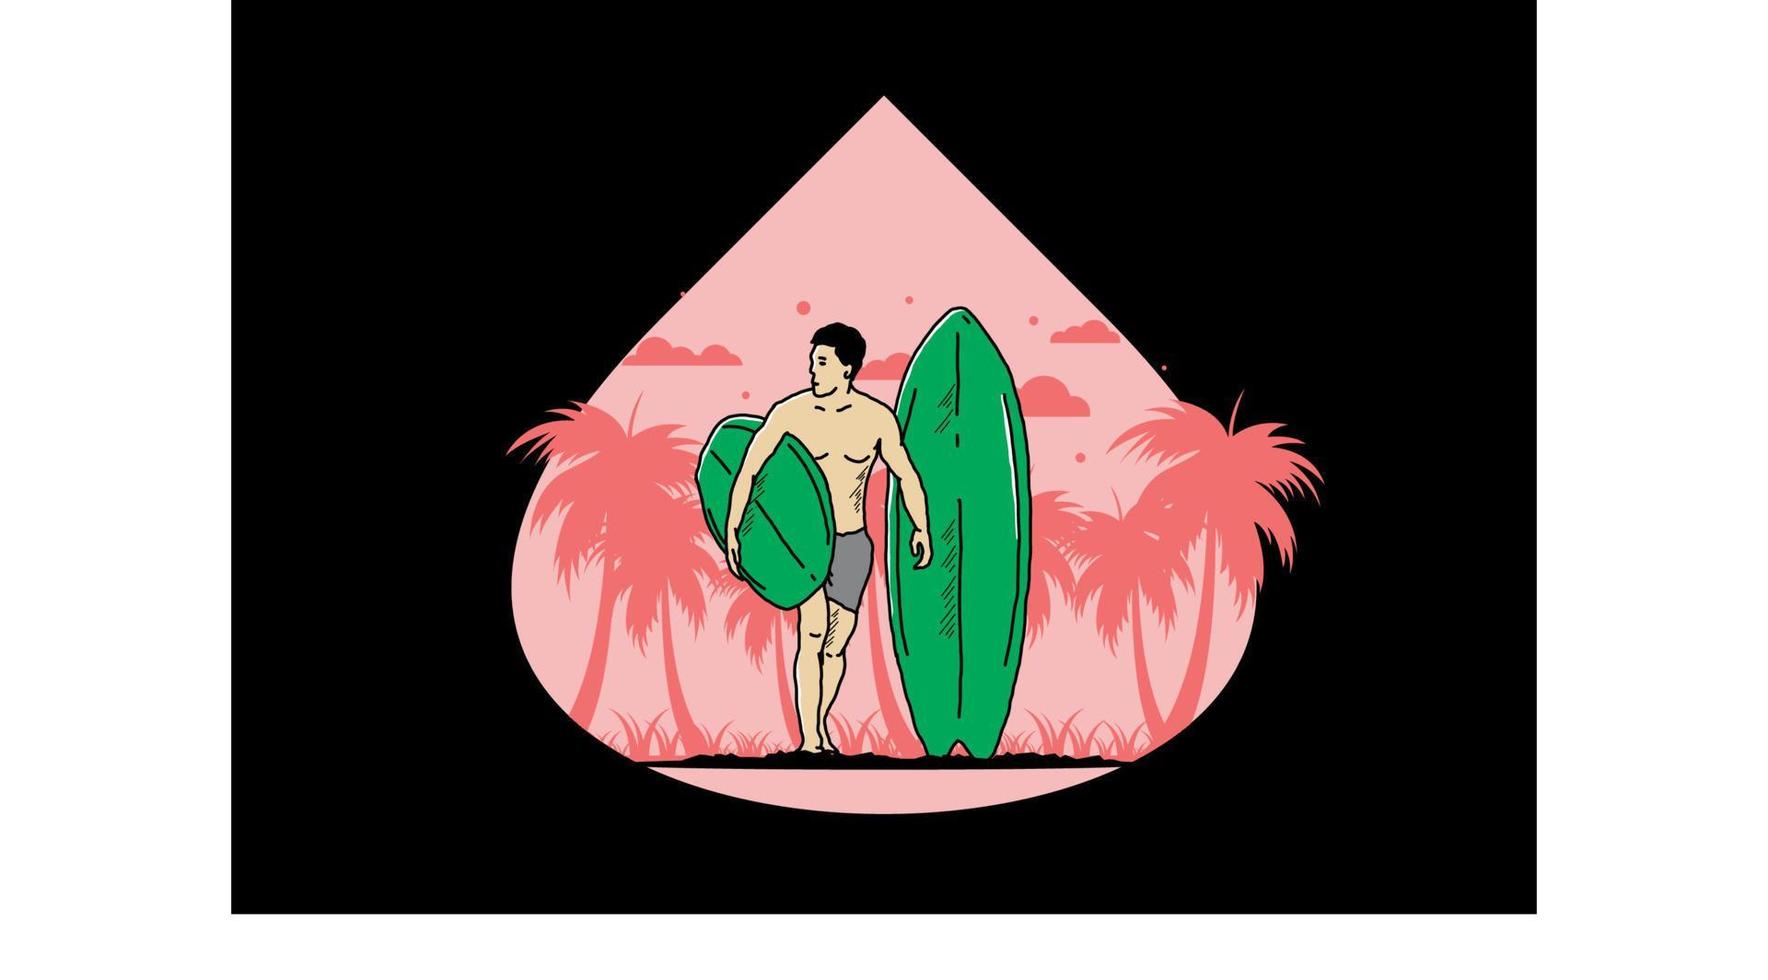 el hombre sin camisa que sostiene la ilustración de la tabla de surf vector